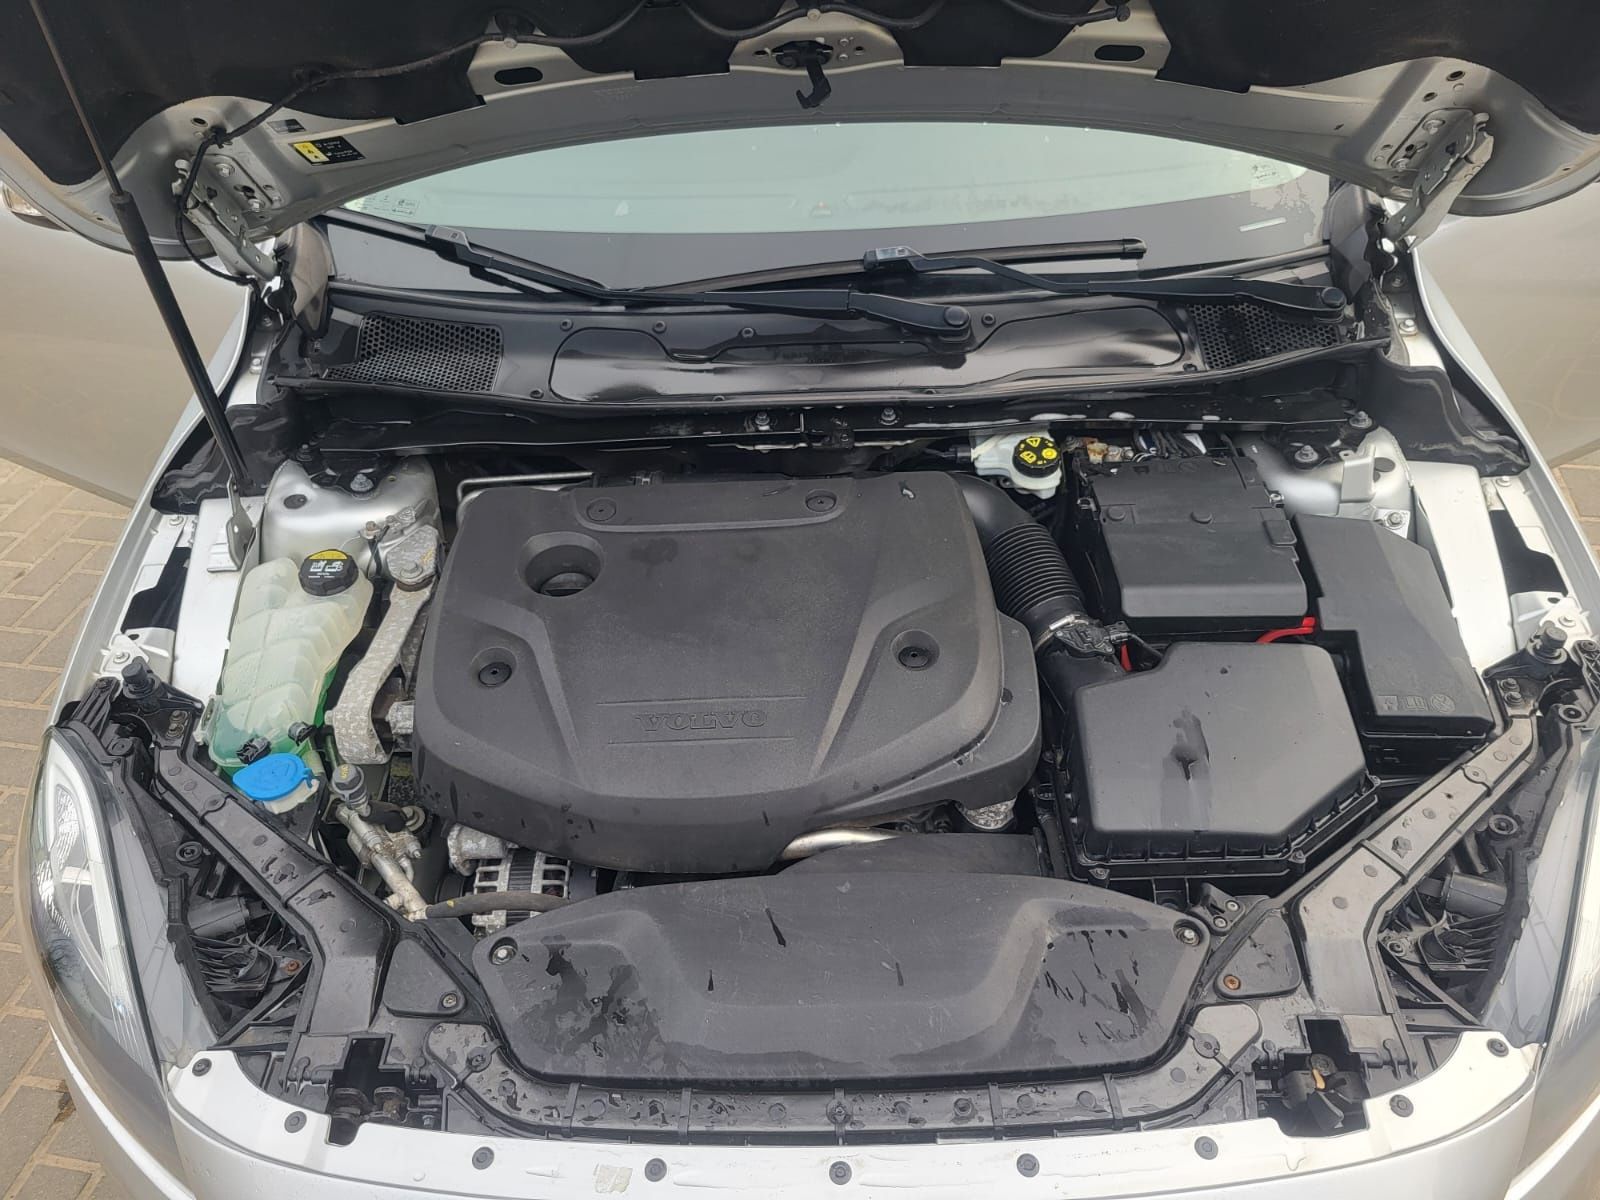 Samochód osobowy Volvo V40 MV74 rok prod 2018 sedan srebrny diesel